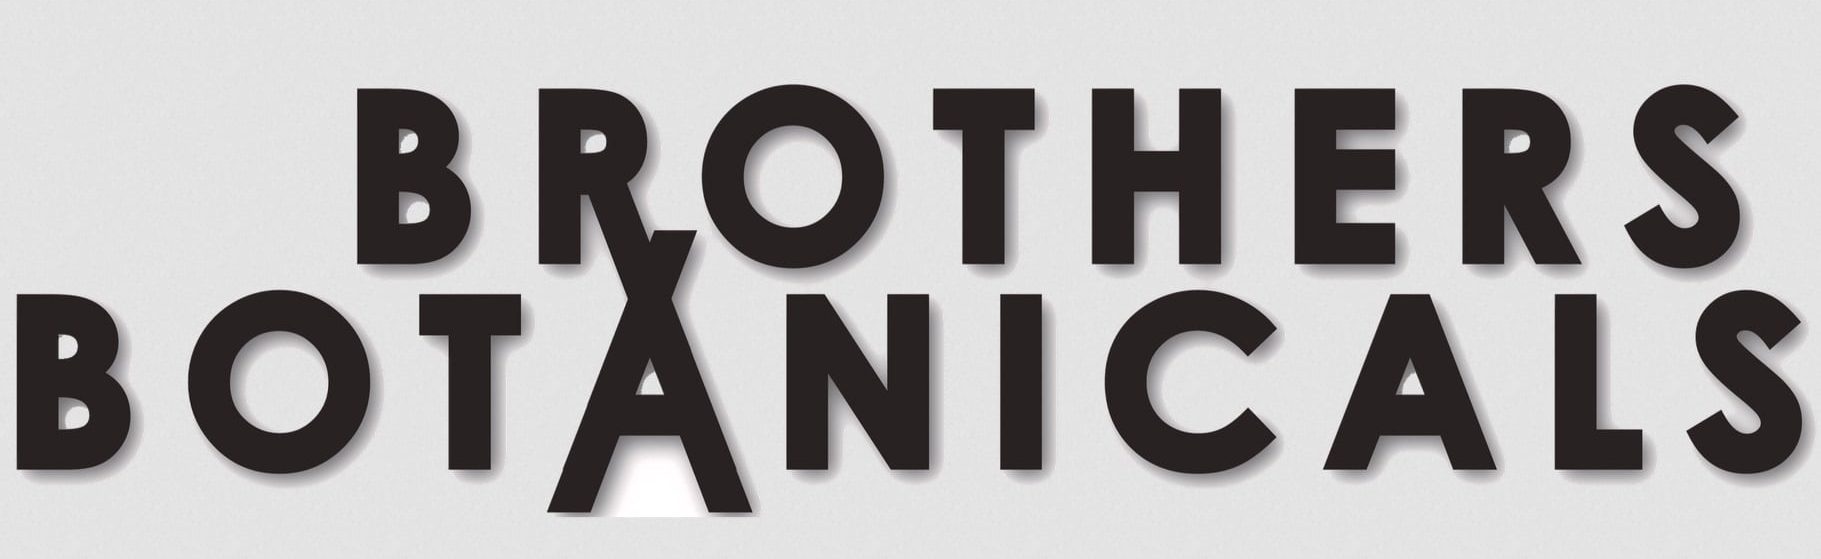 Brother botanicals banner logo